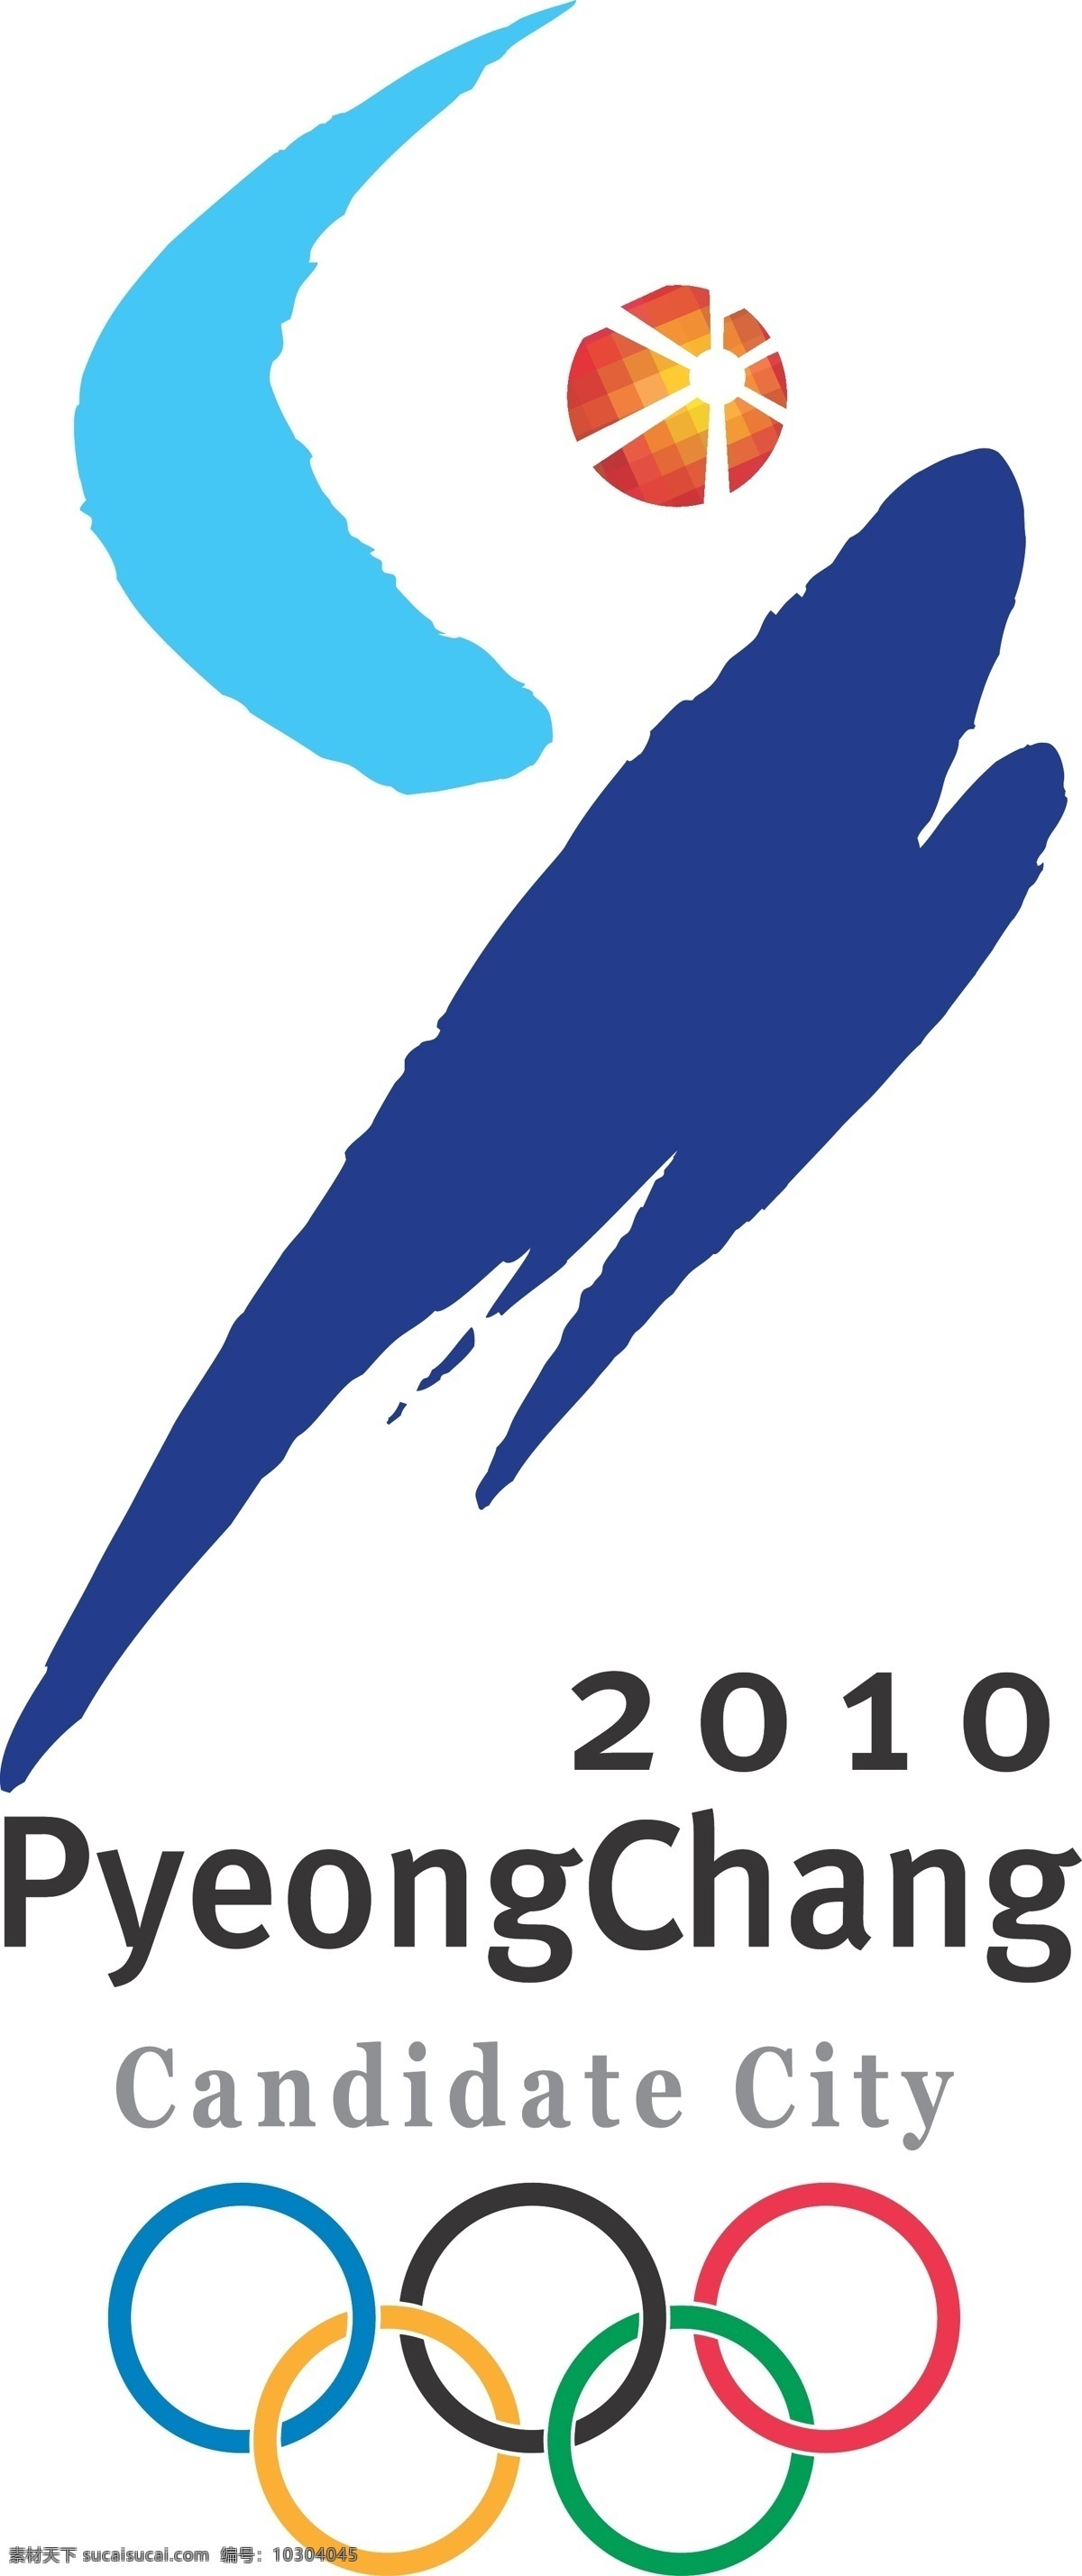 2010 平昌 申奥 会徽 奥运 申奥会徽集锦 公共标识标志 标识标志图标 矢量